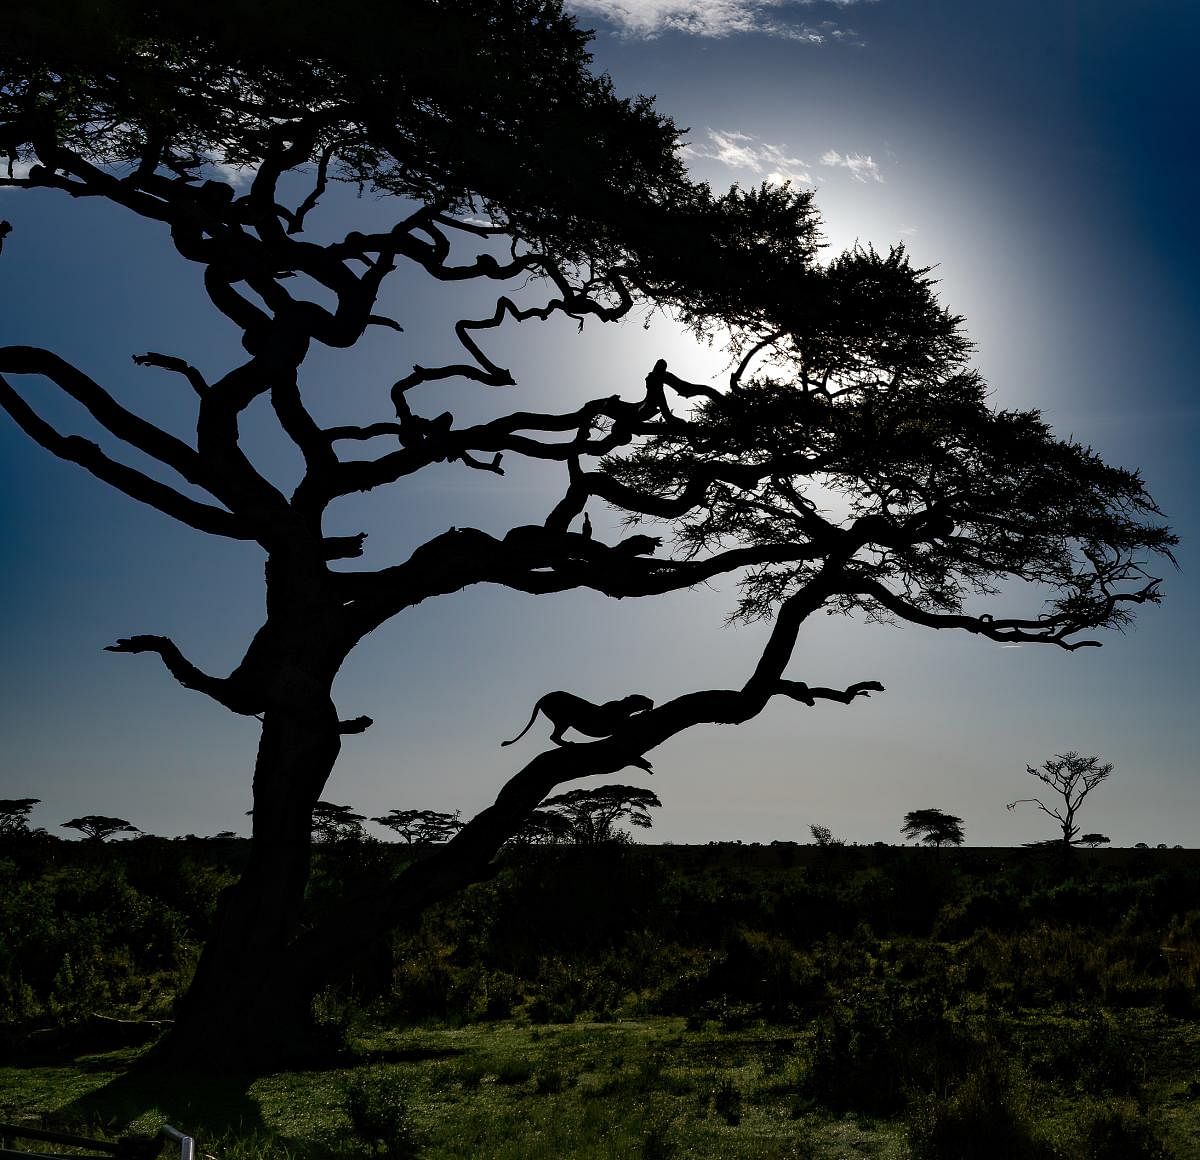 Vantage point. Serengeti National Park, Tanzania